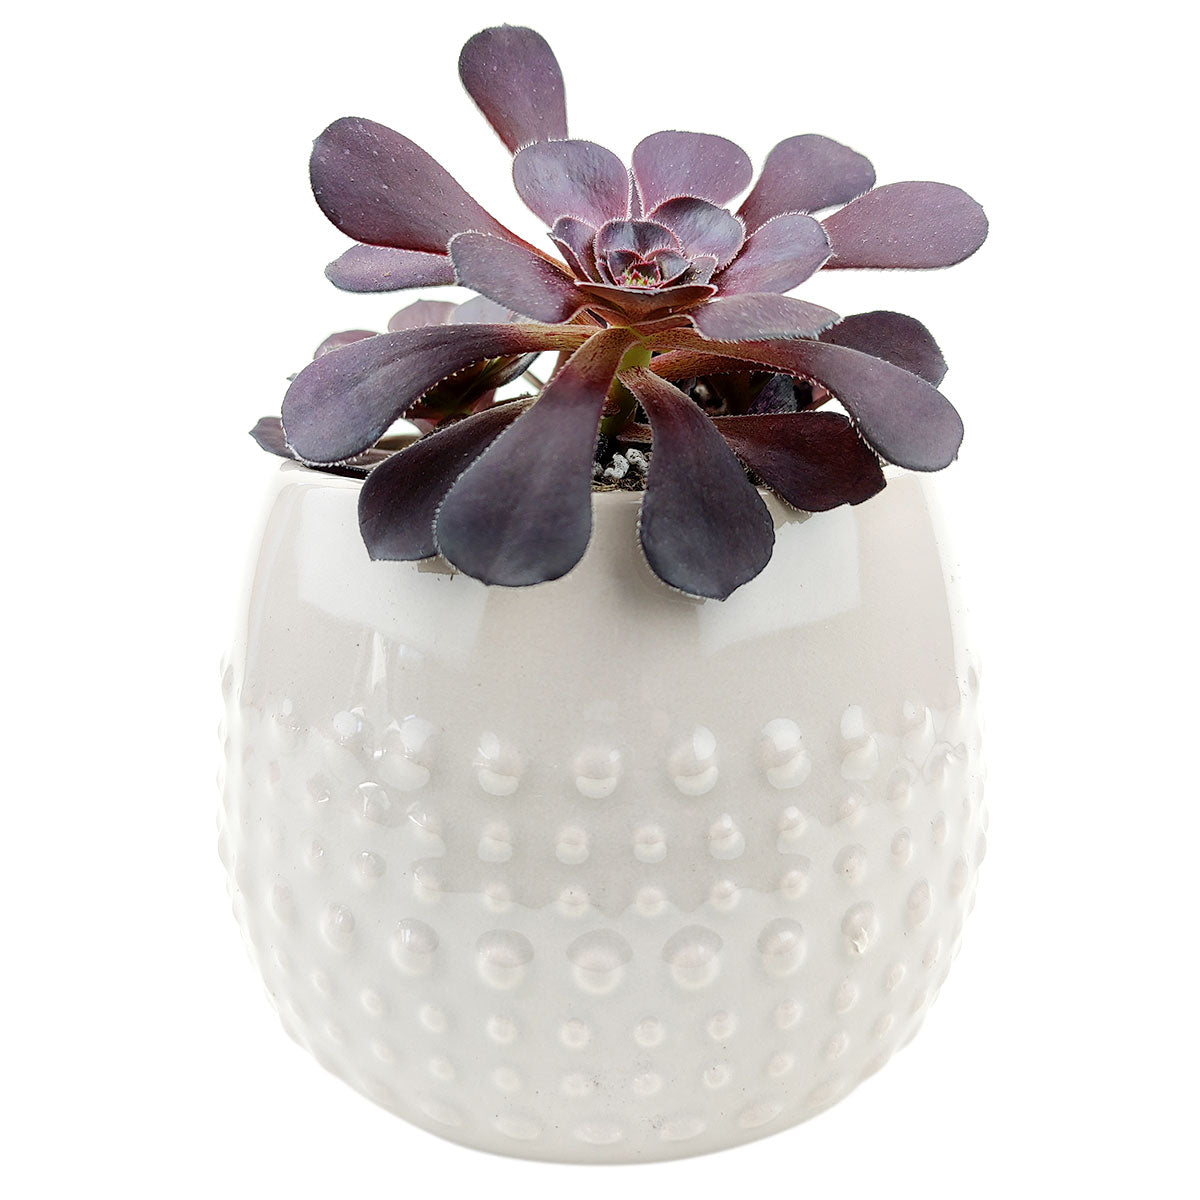 Beige Dot Pot for sale, ceramic vase for home decor, ceramic succulent and cactus pots for sale, Succulent gift ideas